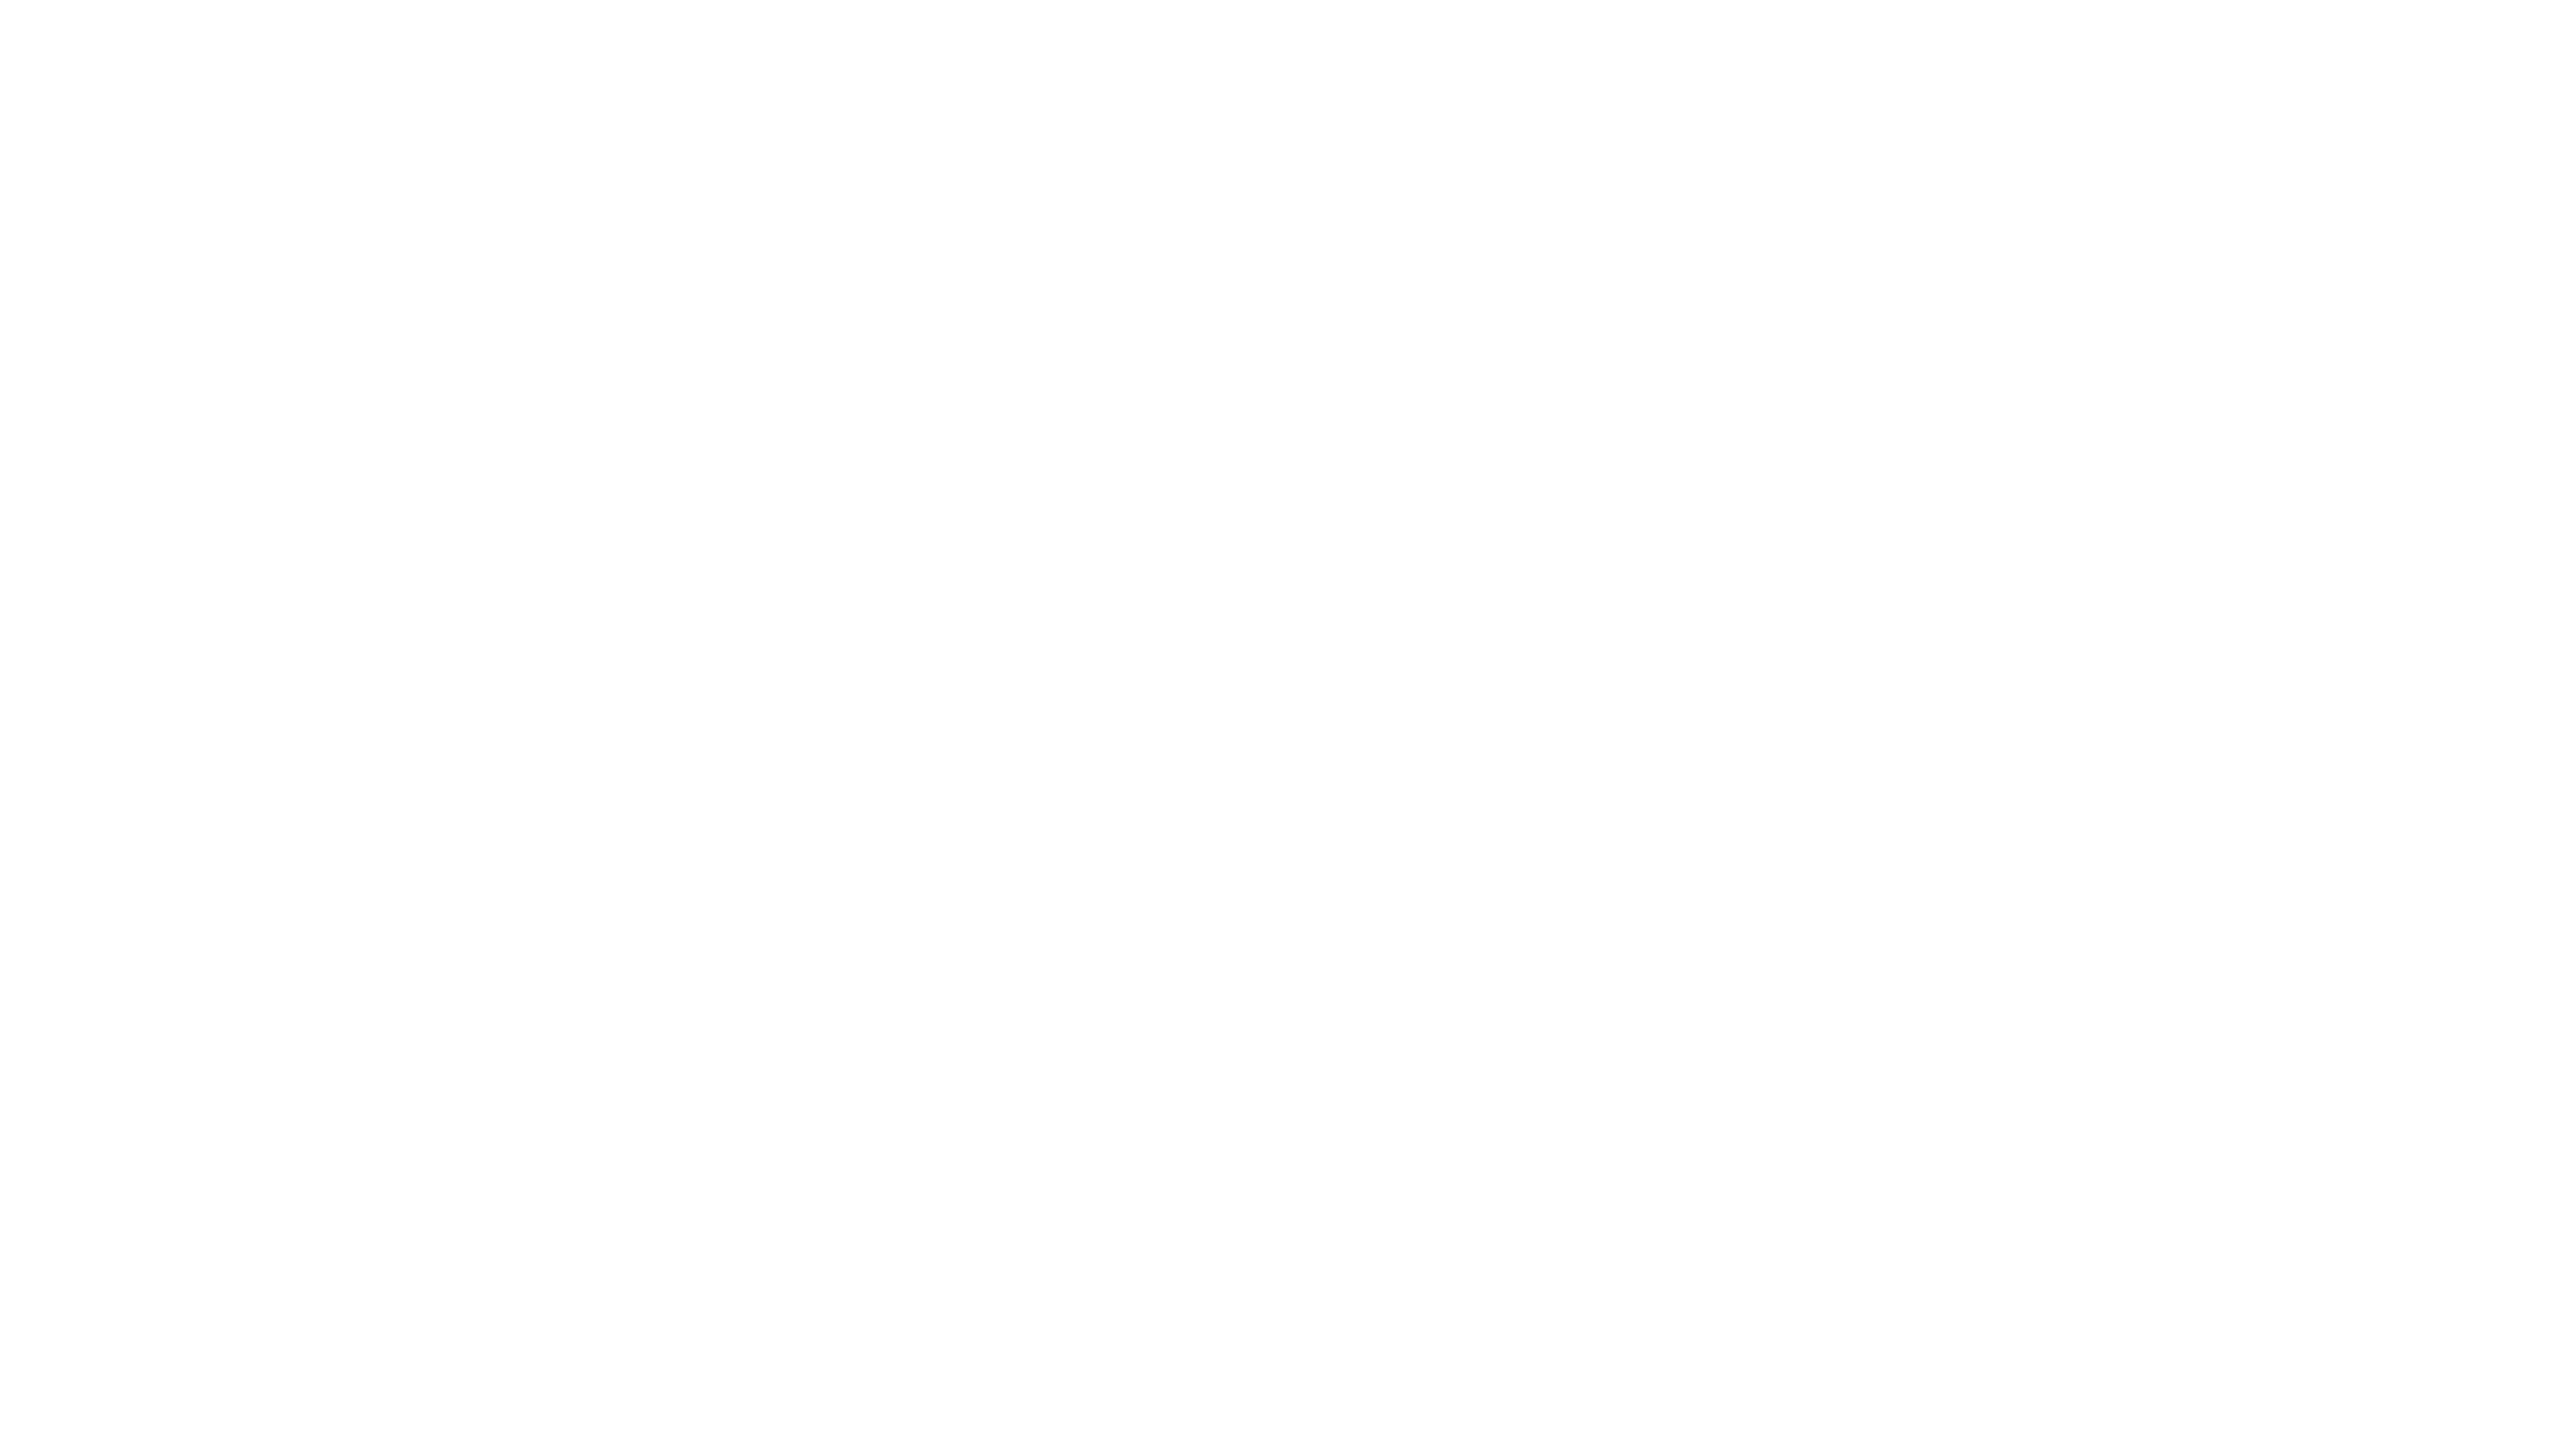 nShift logo white